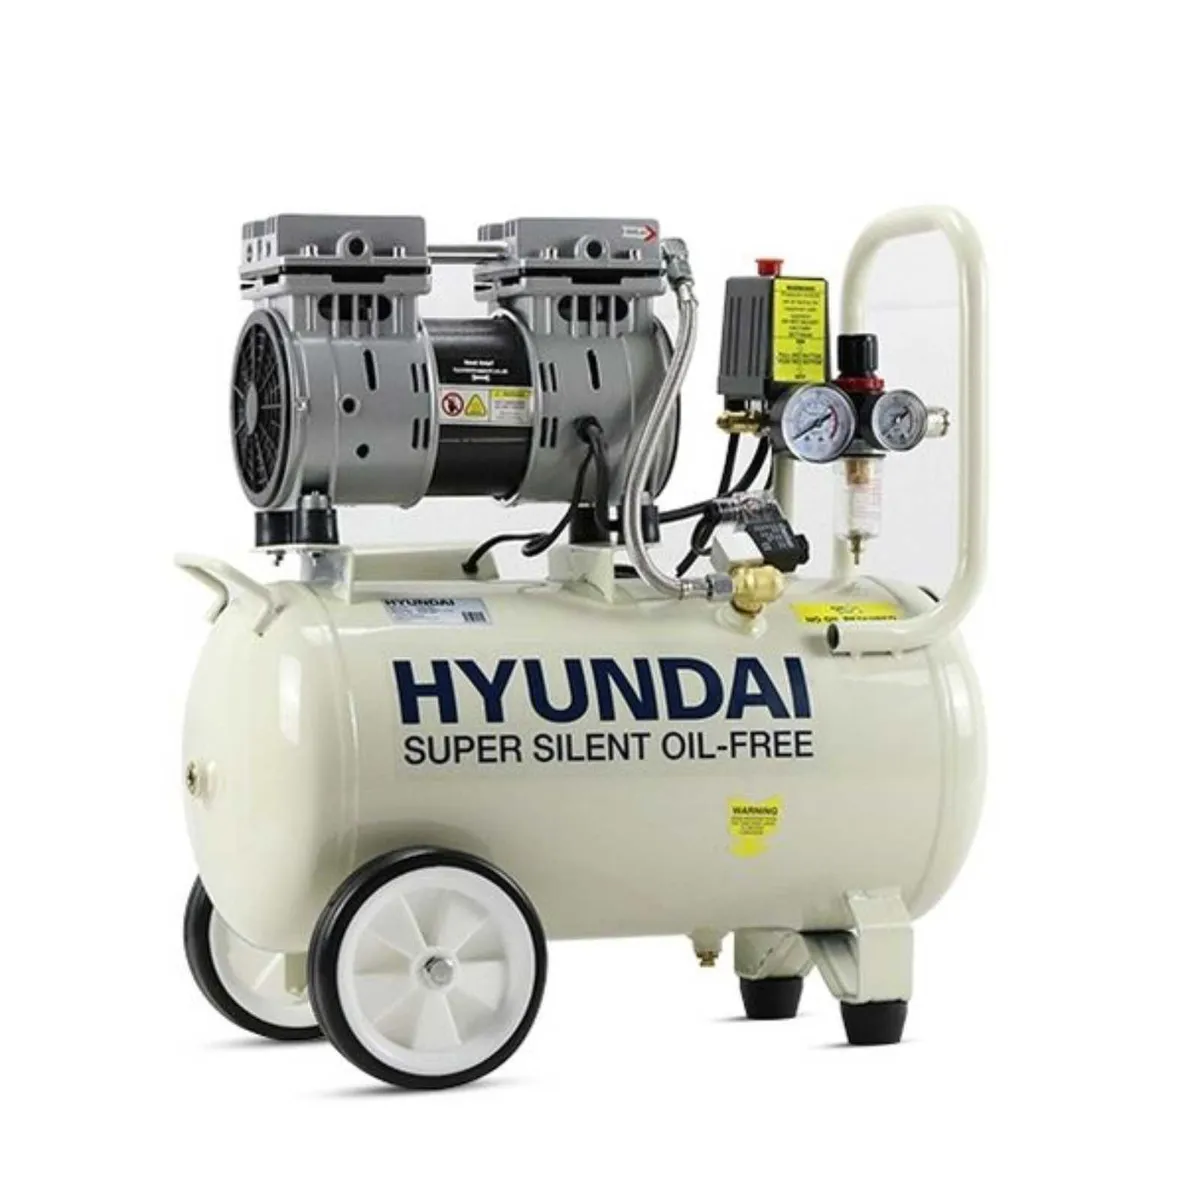 Hyundai 24L Silent Air Compressor (5.2CFM/100psi) - Image 1